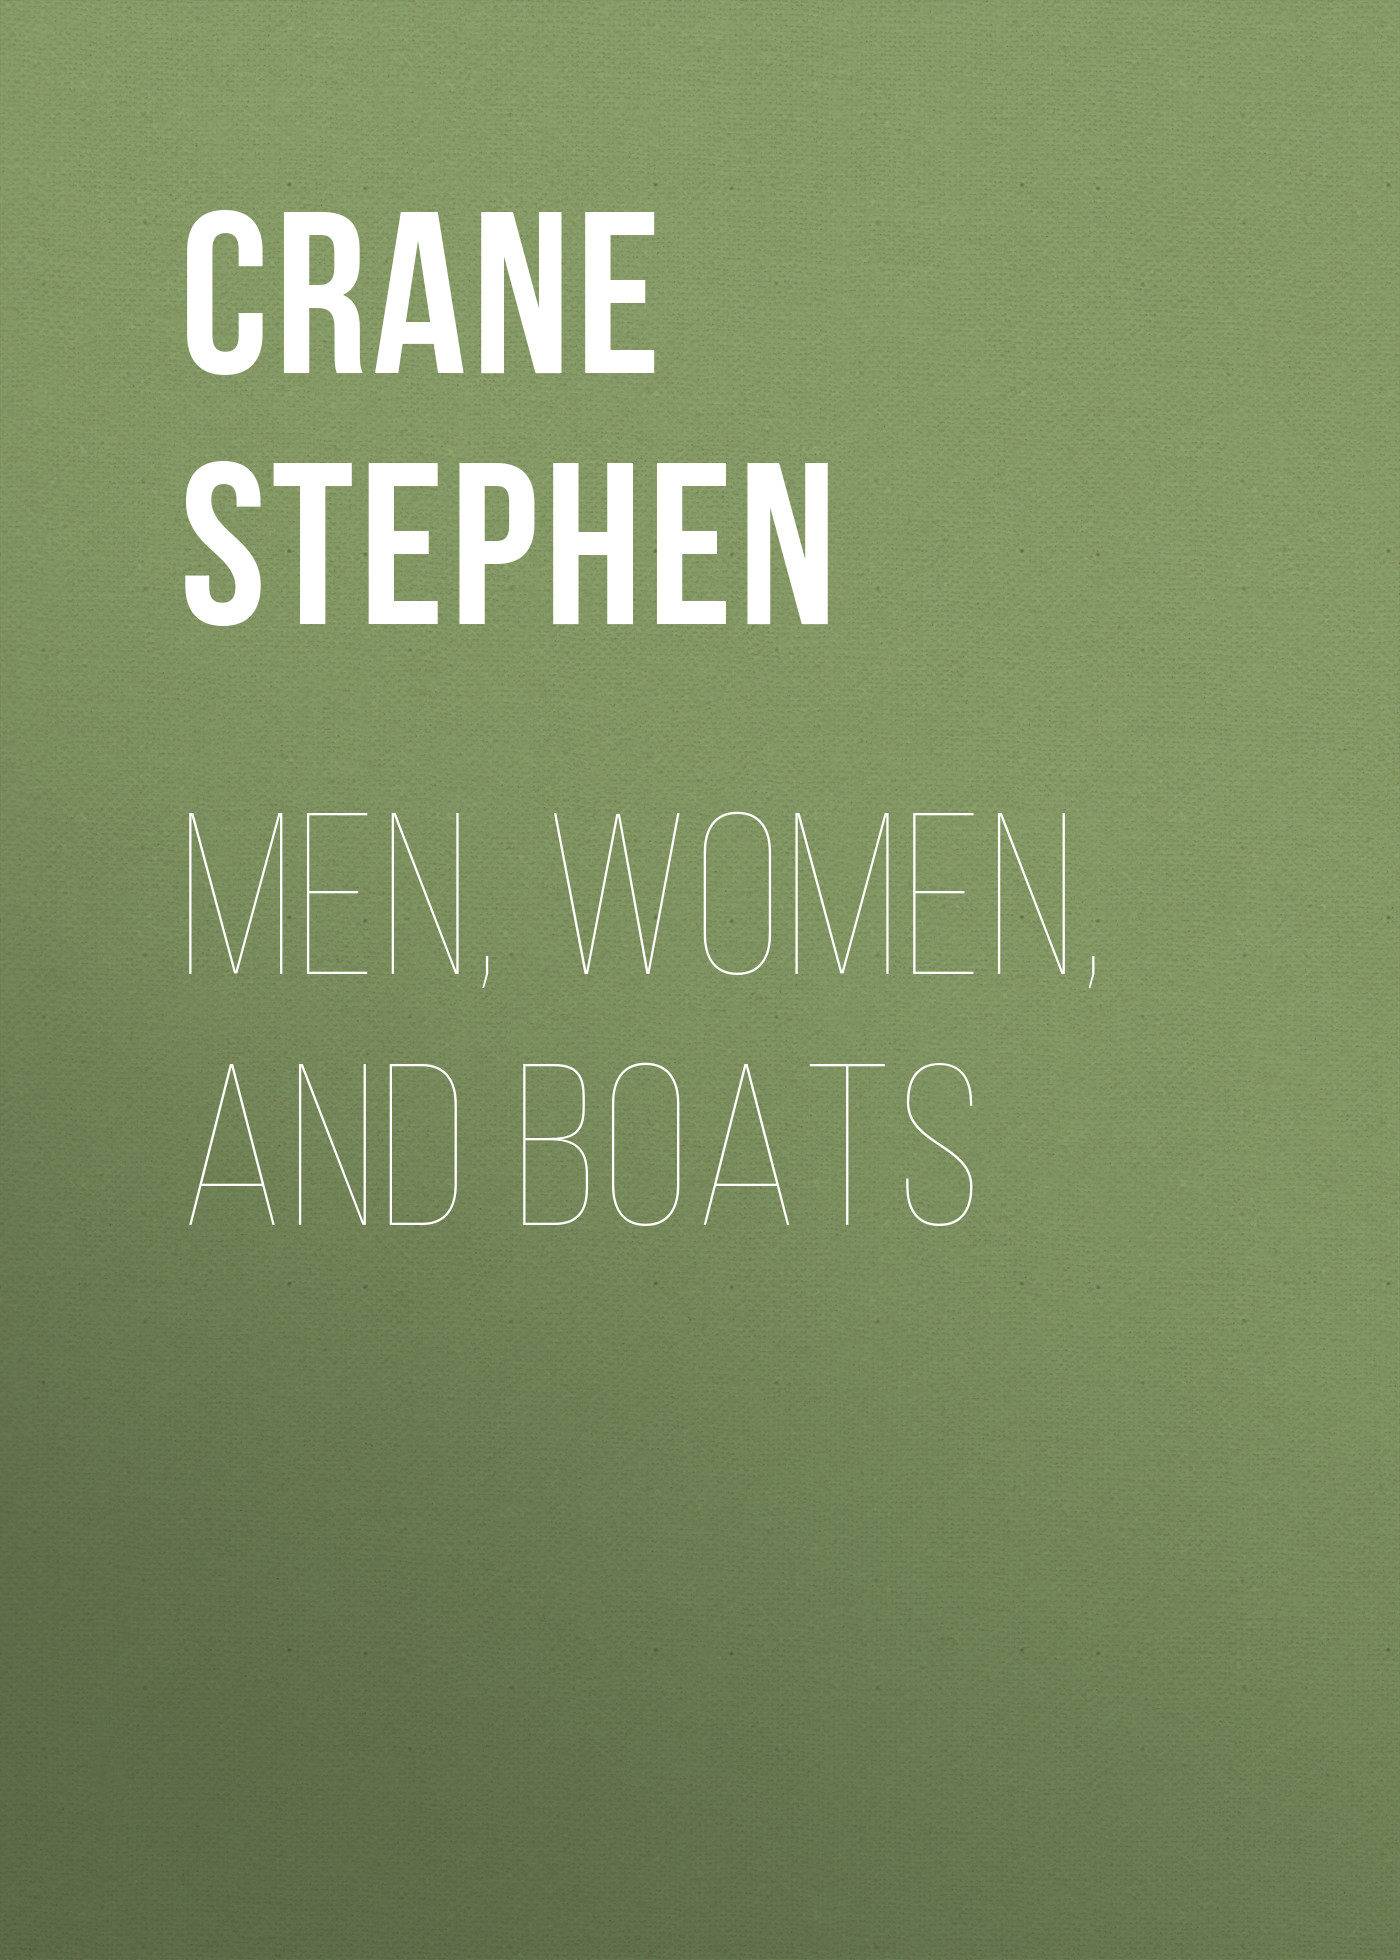 Книга Men, Women, and Boats из серии , созданная Stephen Crane, может относится к жанру Социальная фантастика, Литература 19 века. Стоимость электронной книги Men, Women, and Boats с идентификатором 34840934 составляет 0 руб.